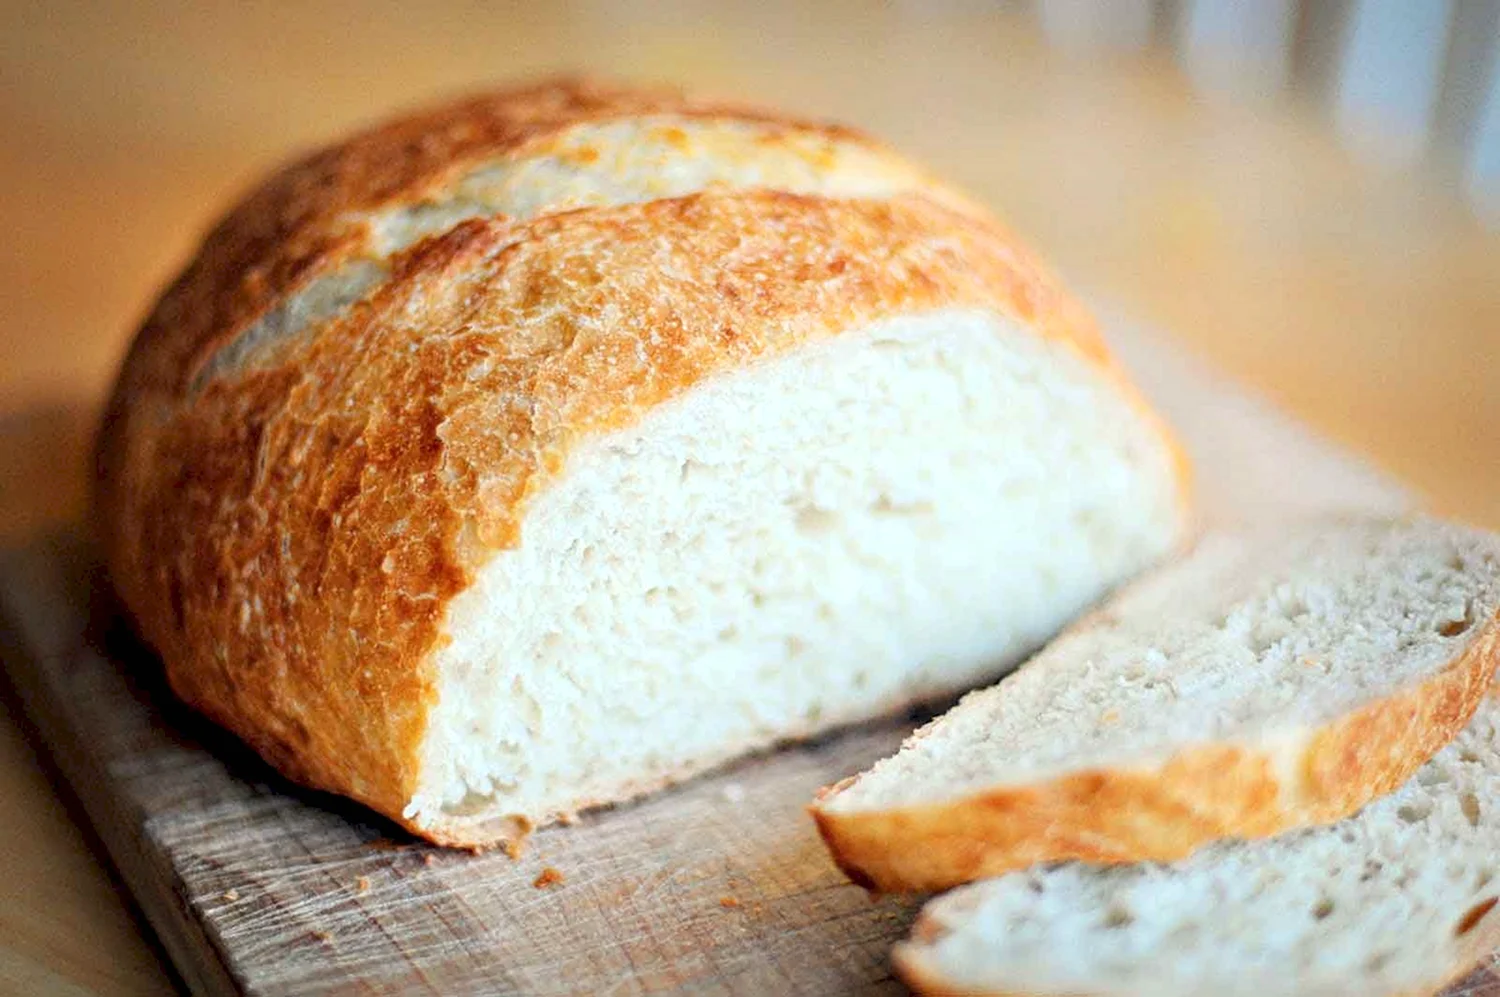 Хлеб пшеничный бездрожжевой